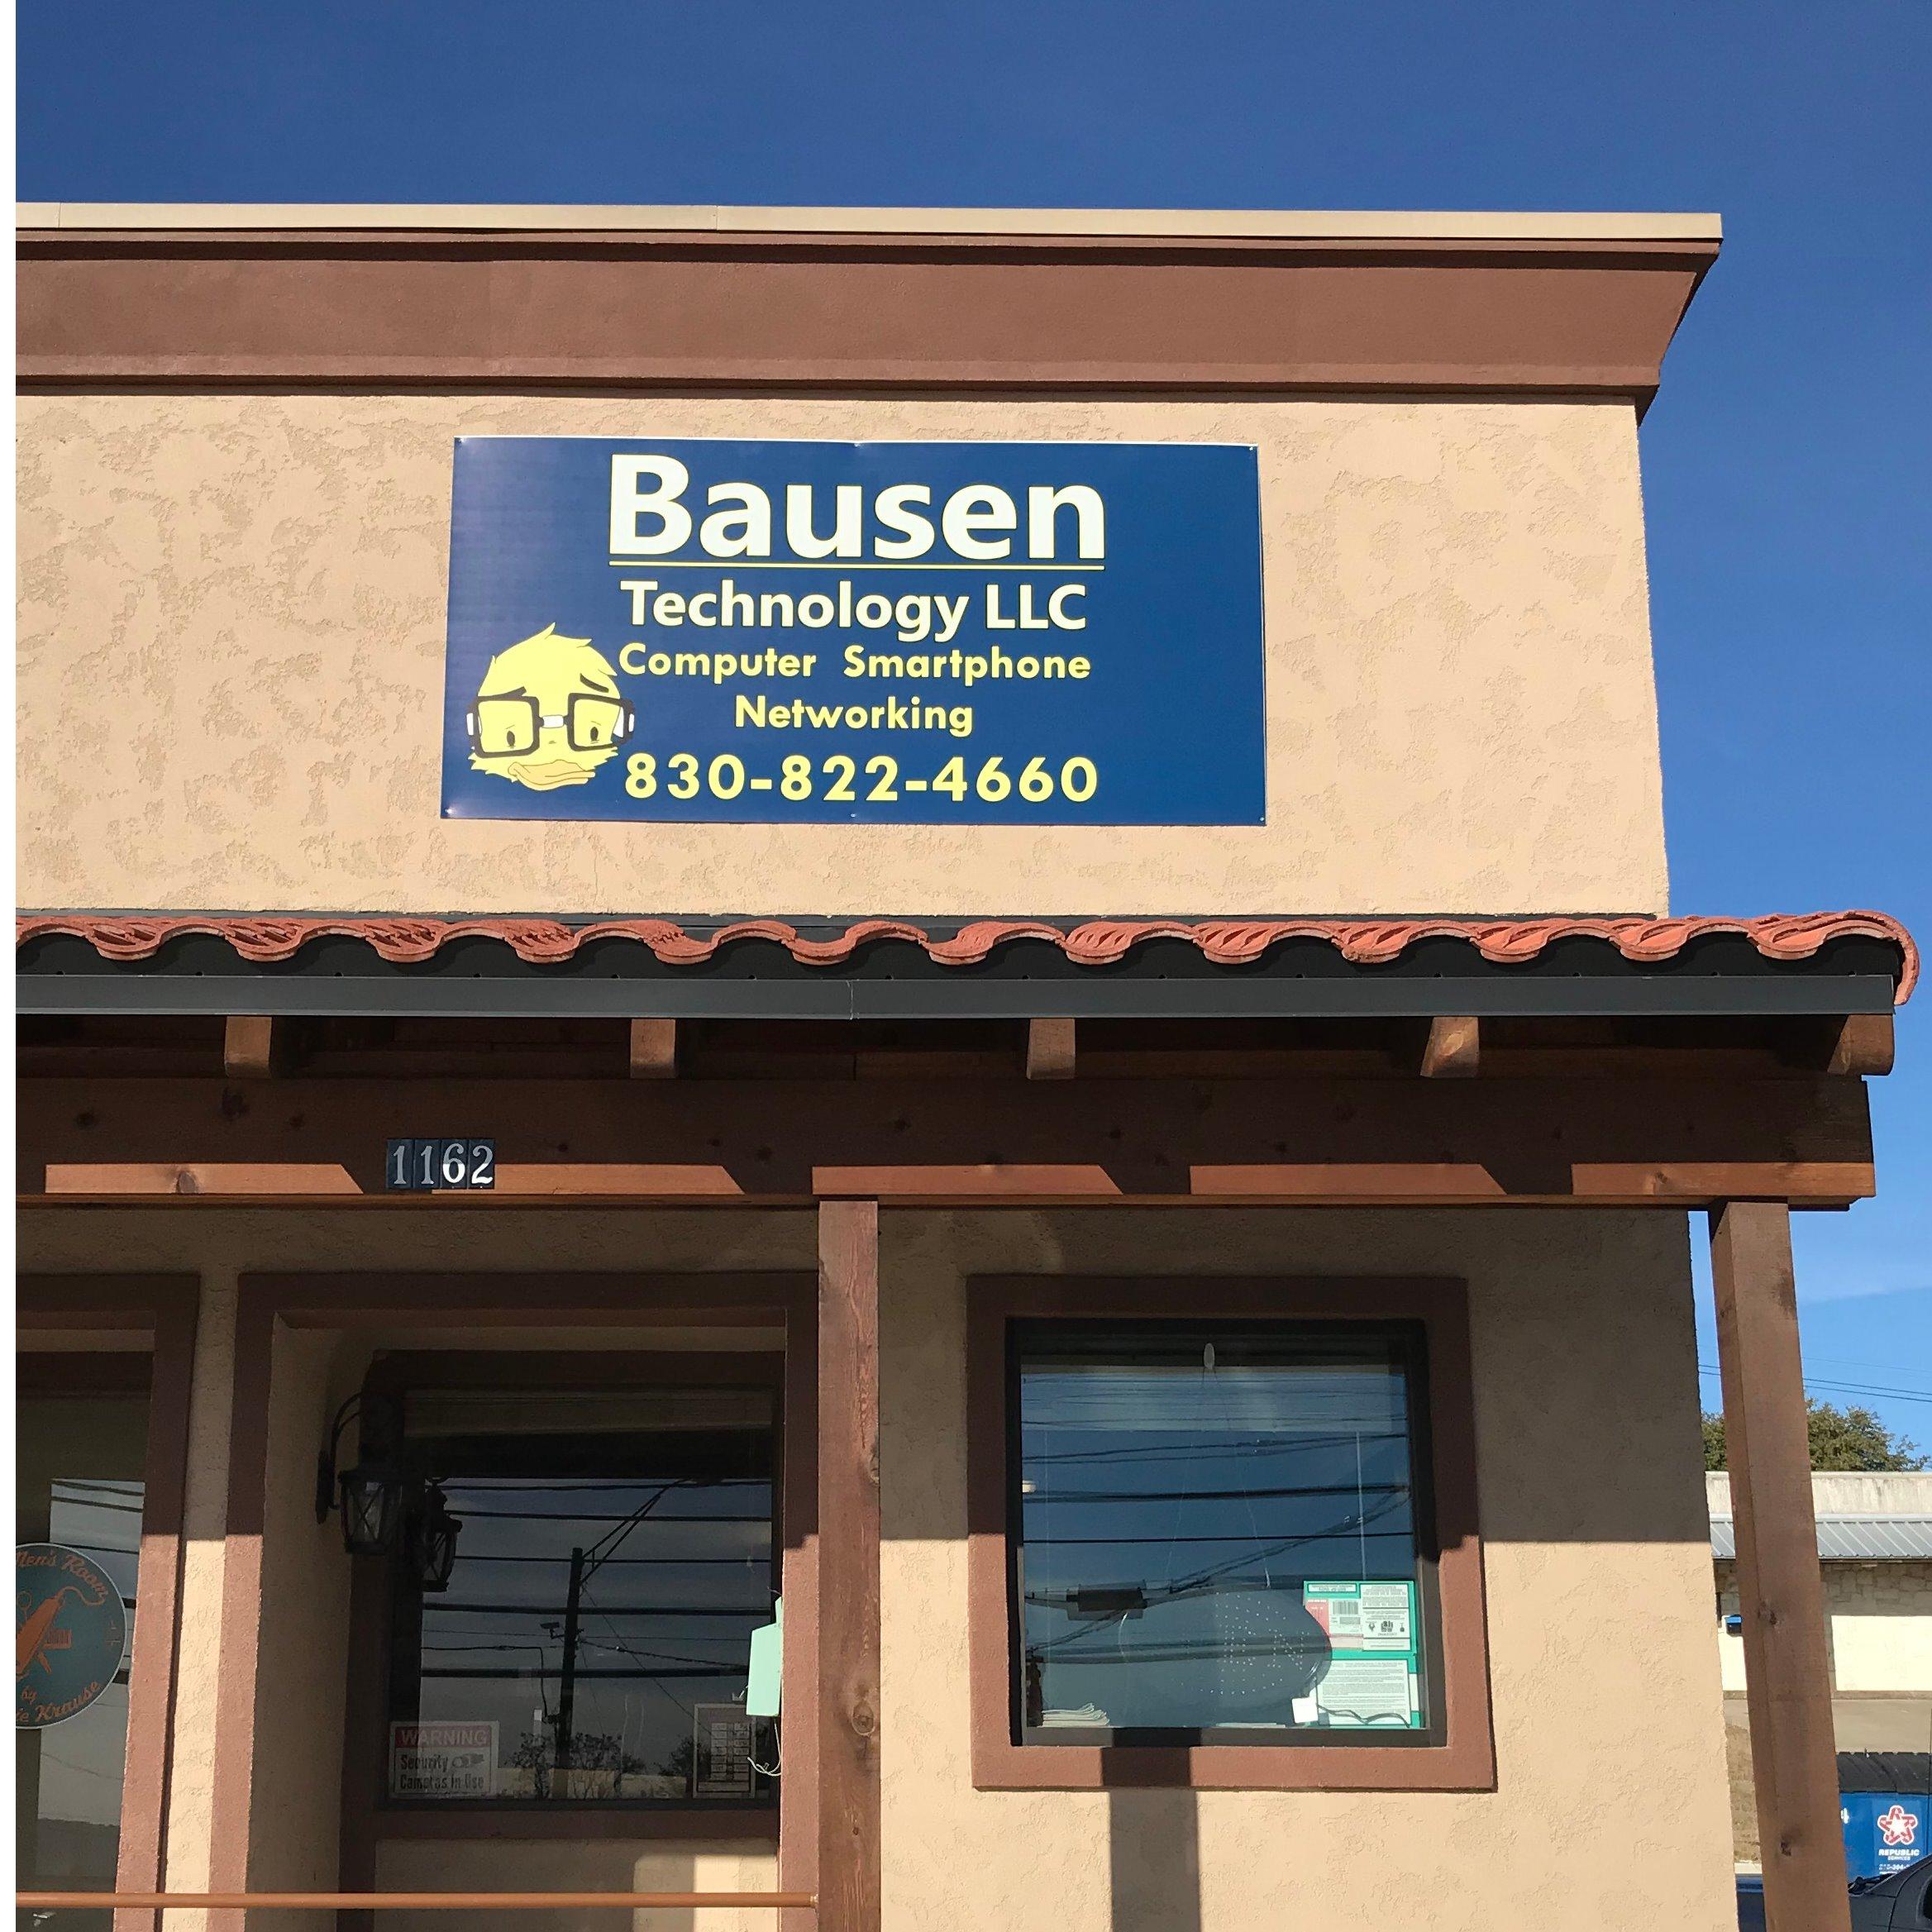 Bausen Technology LLC